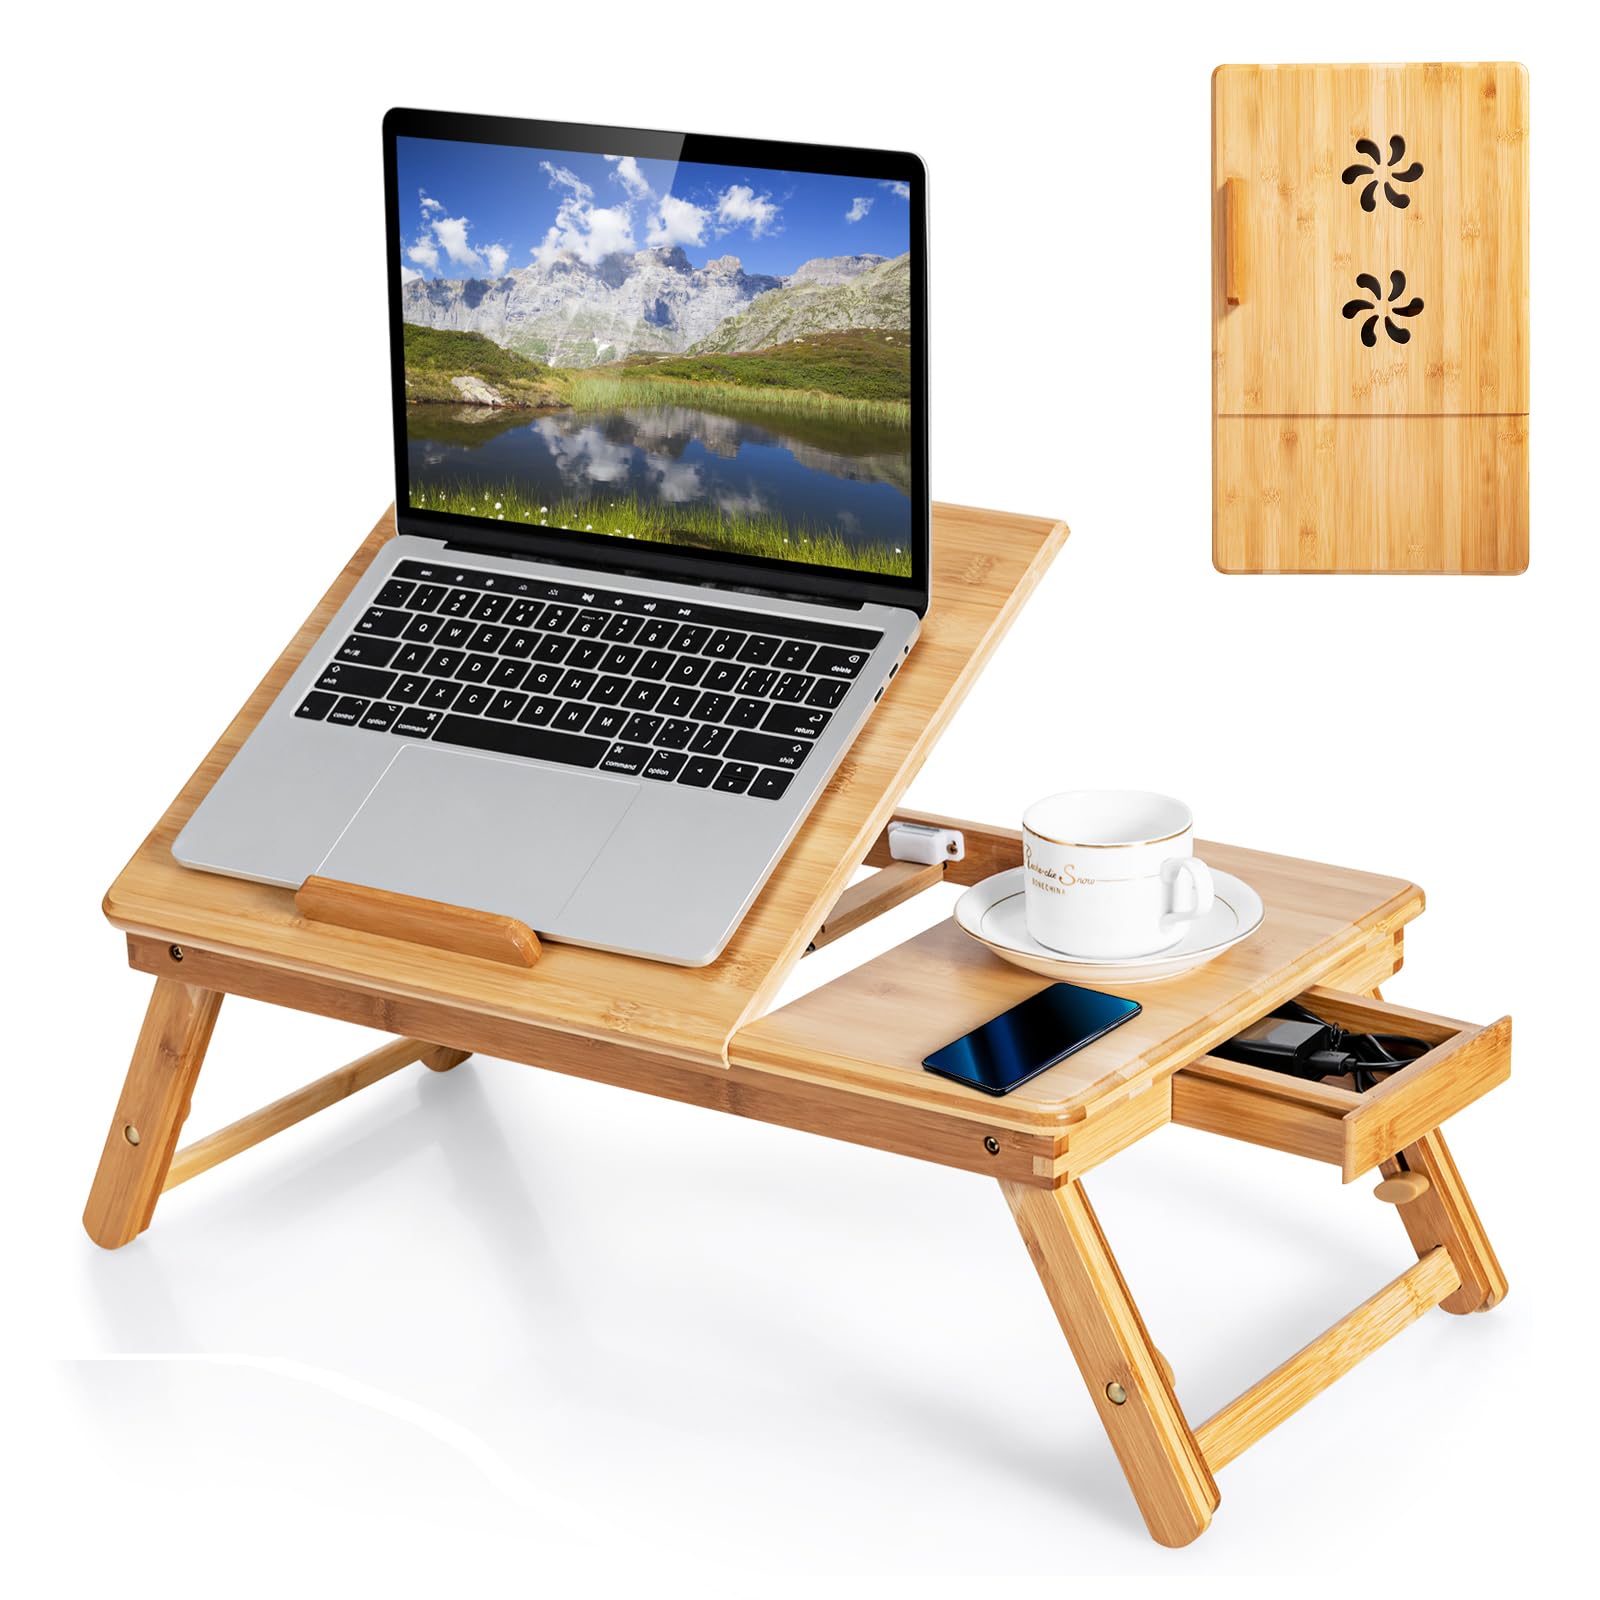 Giantex Bamboo Laptop Desk